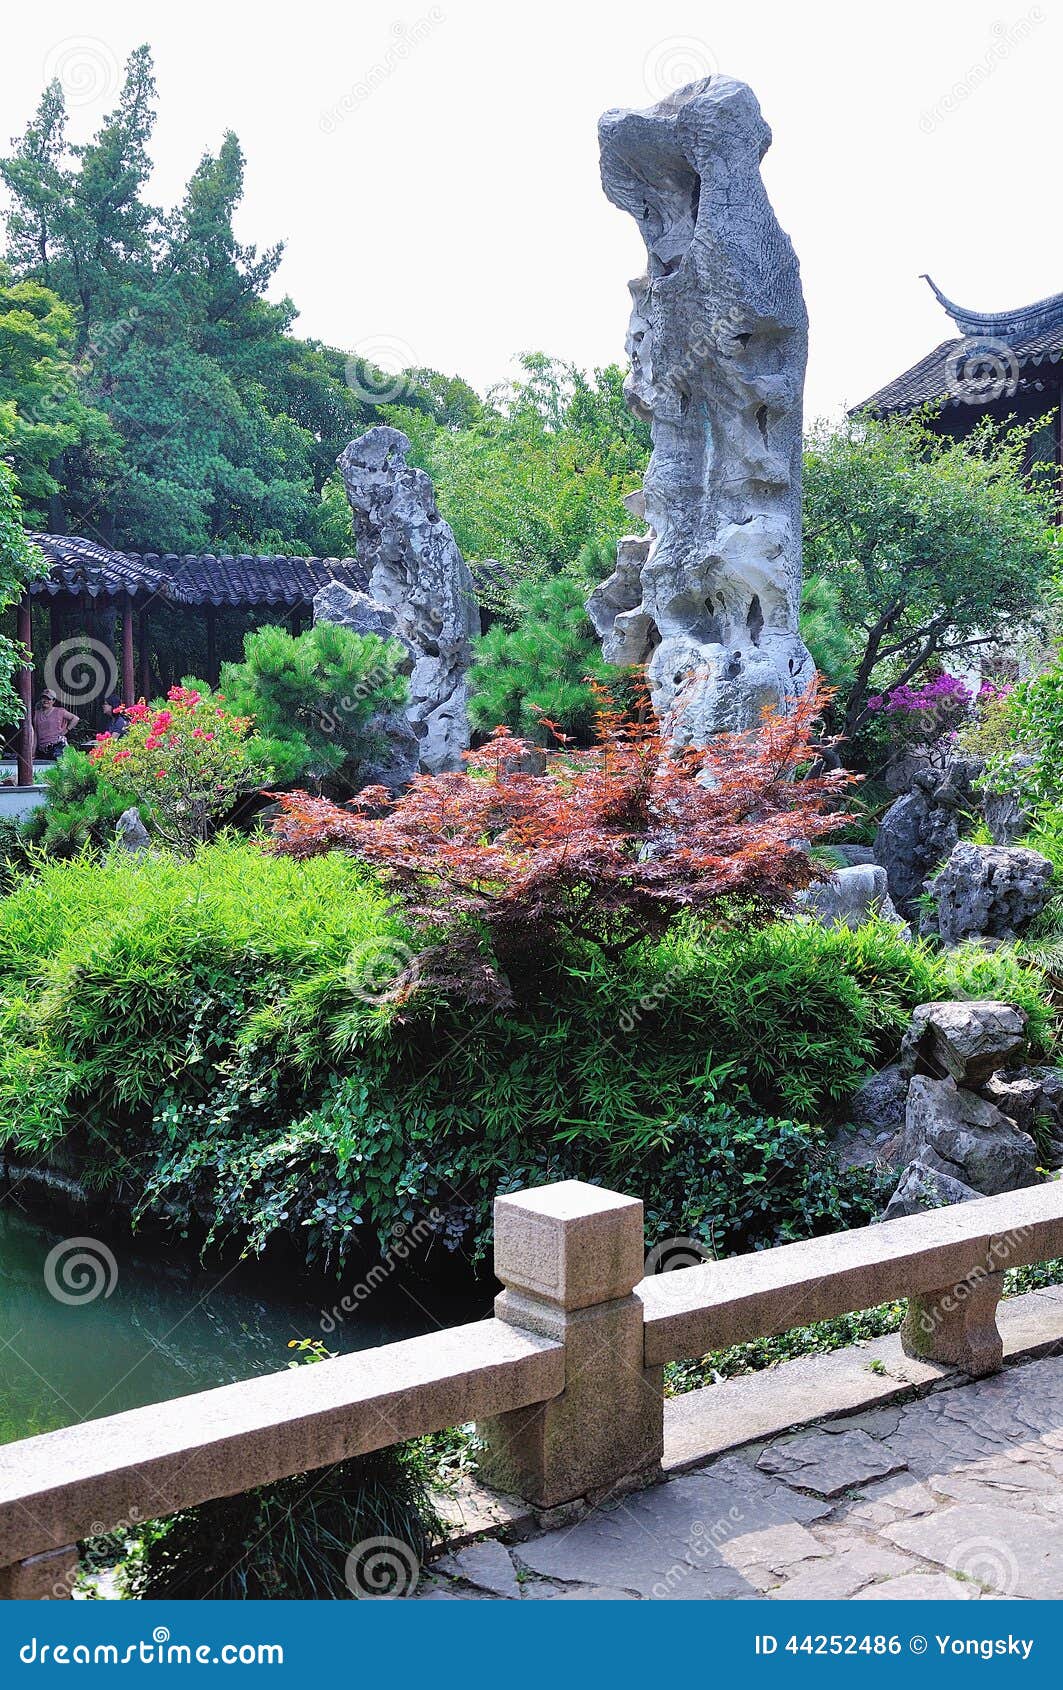 Ociągający się ogród w Suzhou porcelanie Budynku układu pomysłowy, mnogi i słynny kamień,